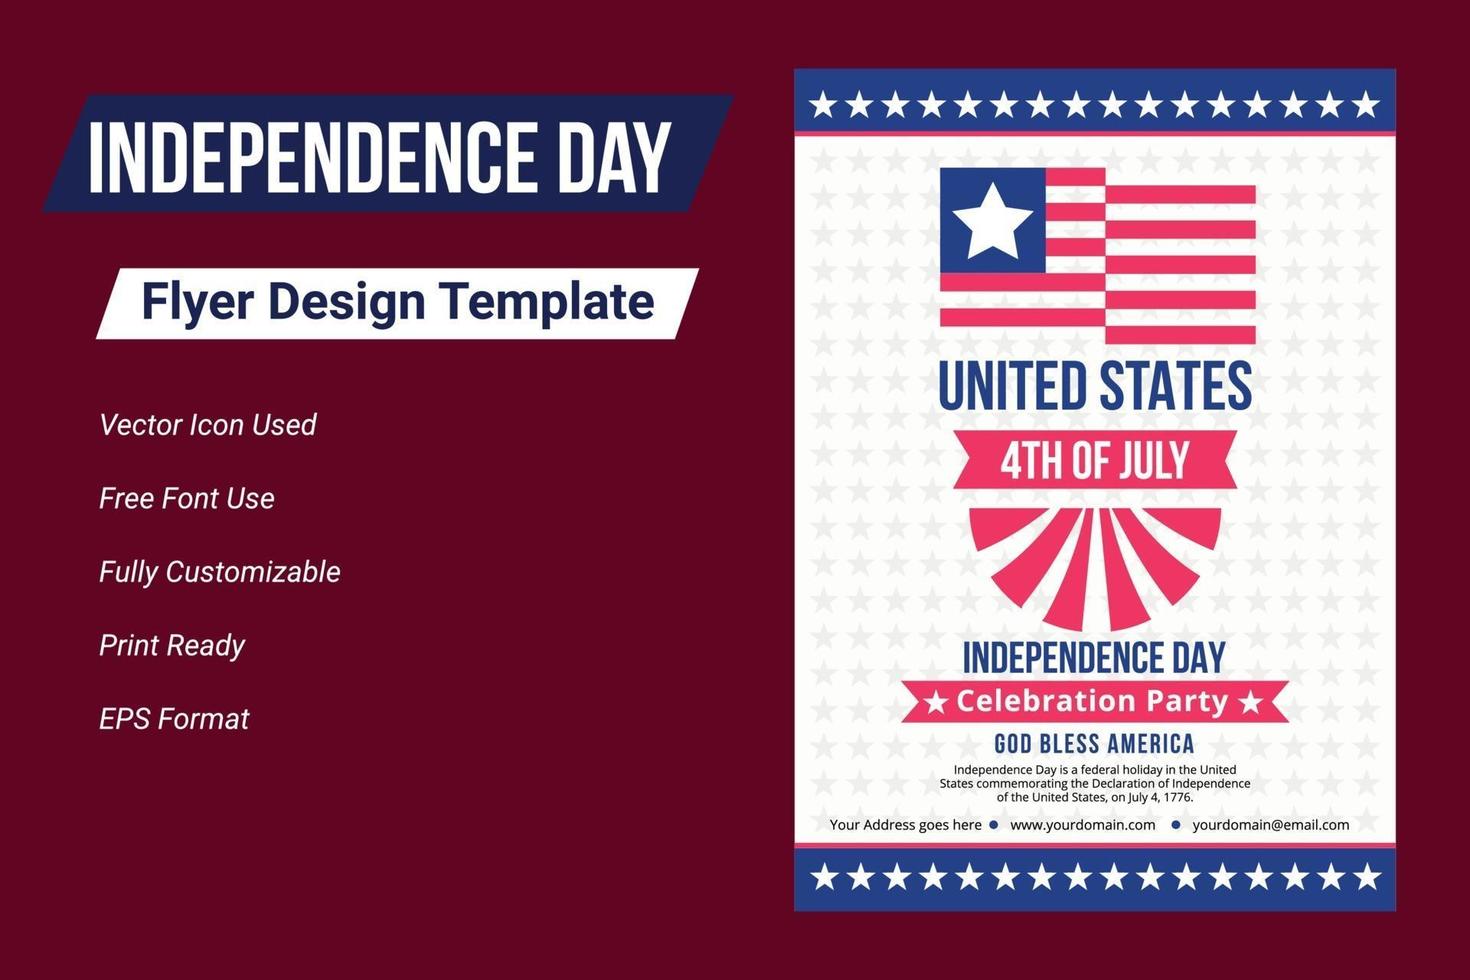 gelukkige onafhankelijkheidsdag 4 juli, dag van de verenigde staten van amerika. vector